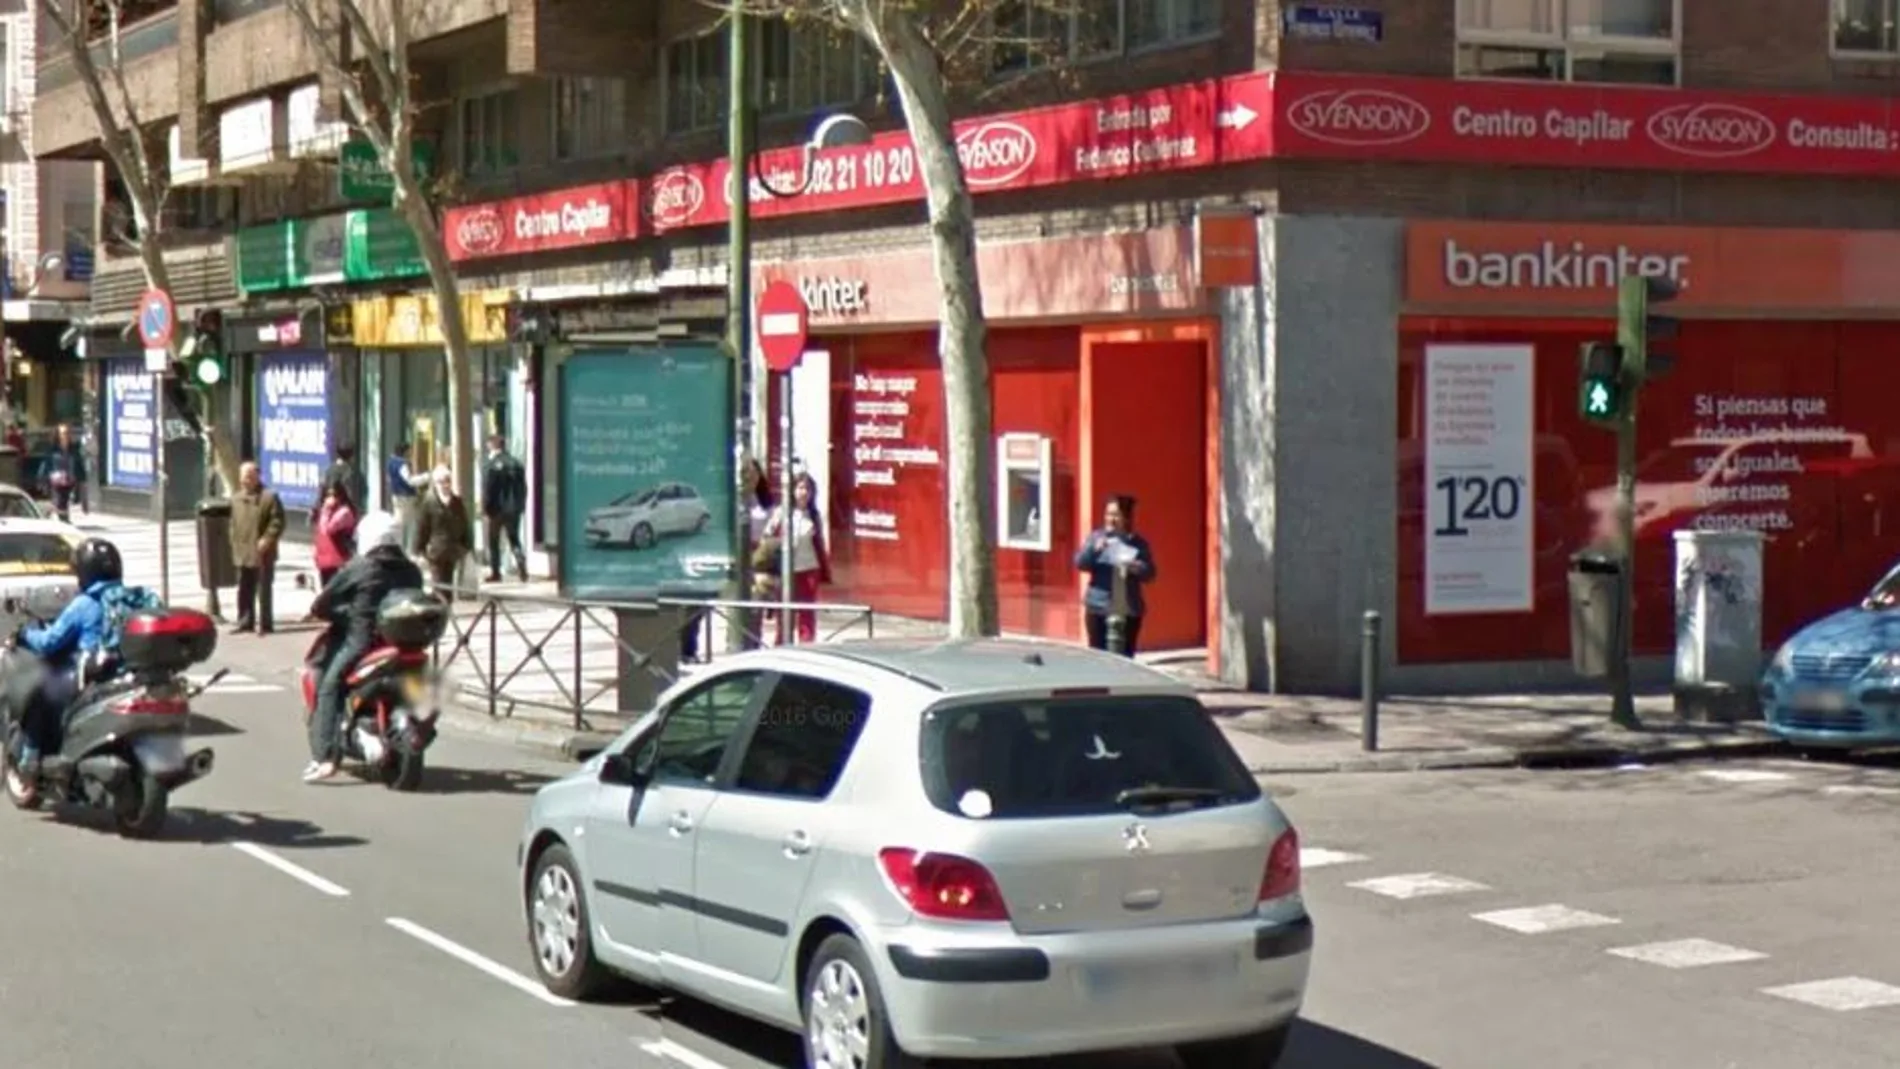 Imagen de la sucursal bancaria de la calle Alcalá contra la que se empotró el vehículo